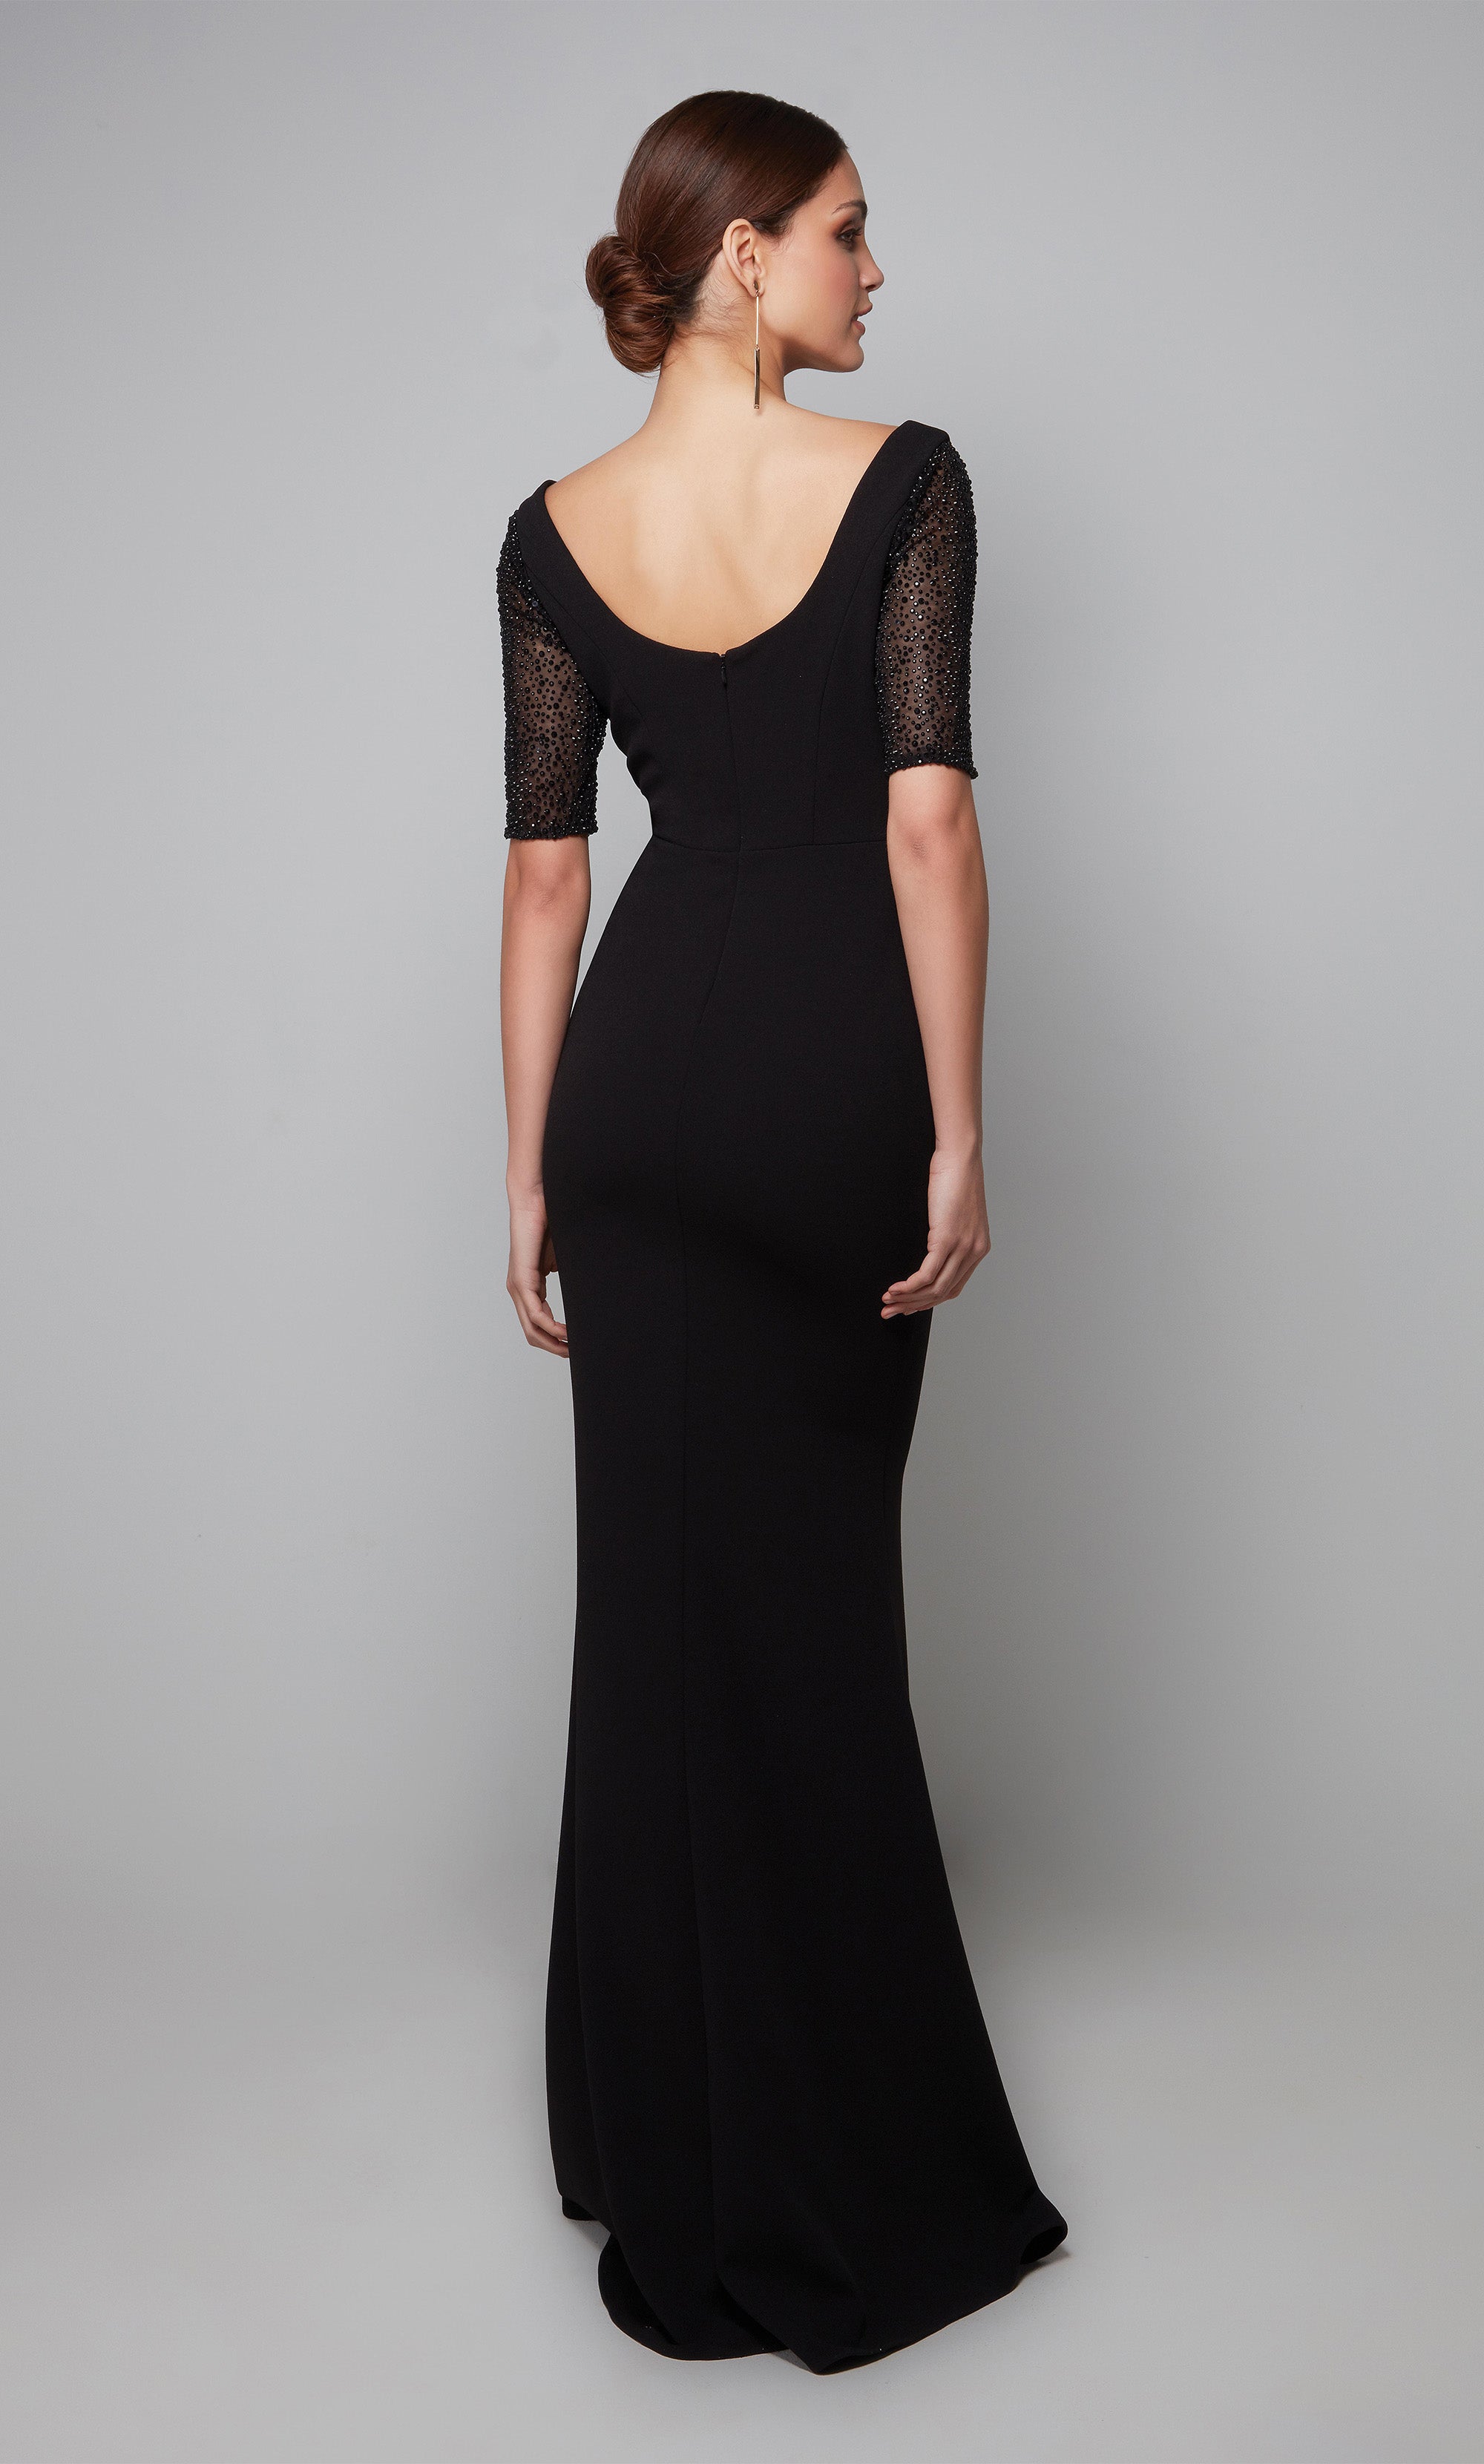 Black Formal Gown Black Elegant Dress Evening Dress  Etsy